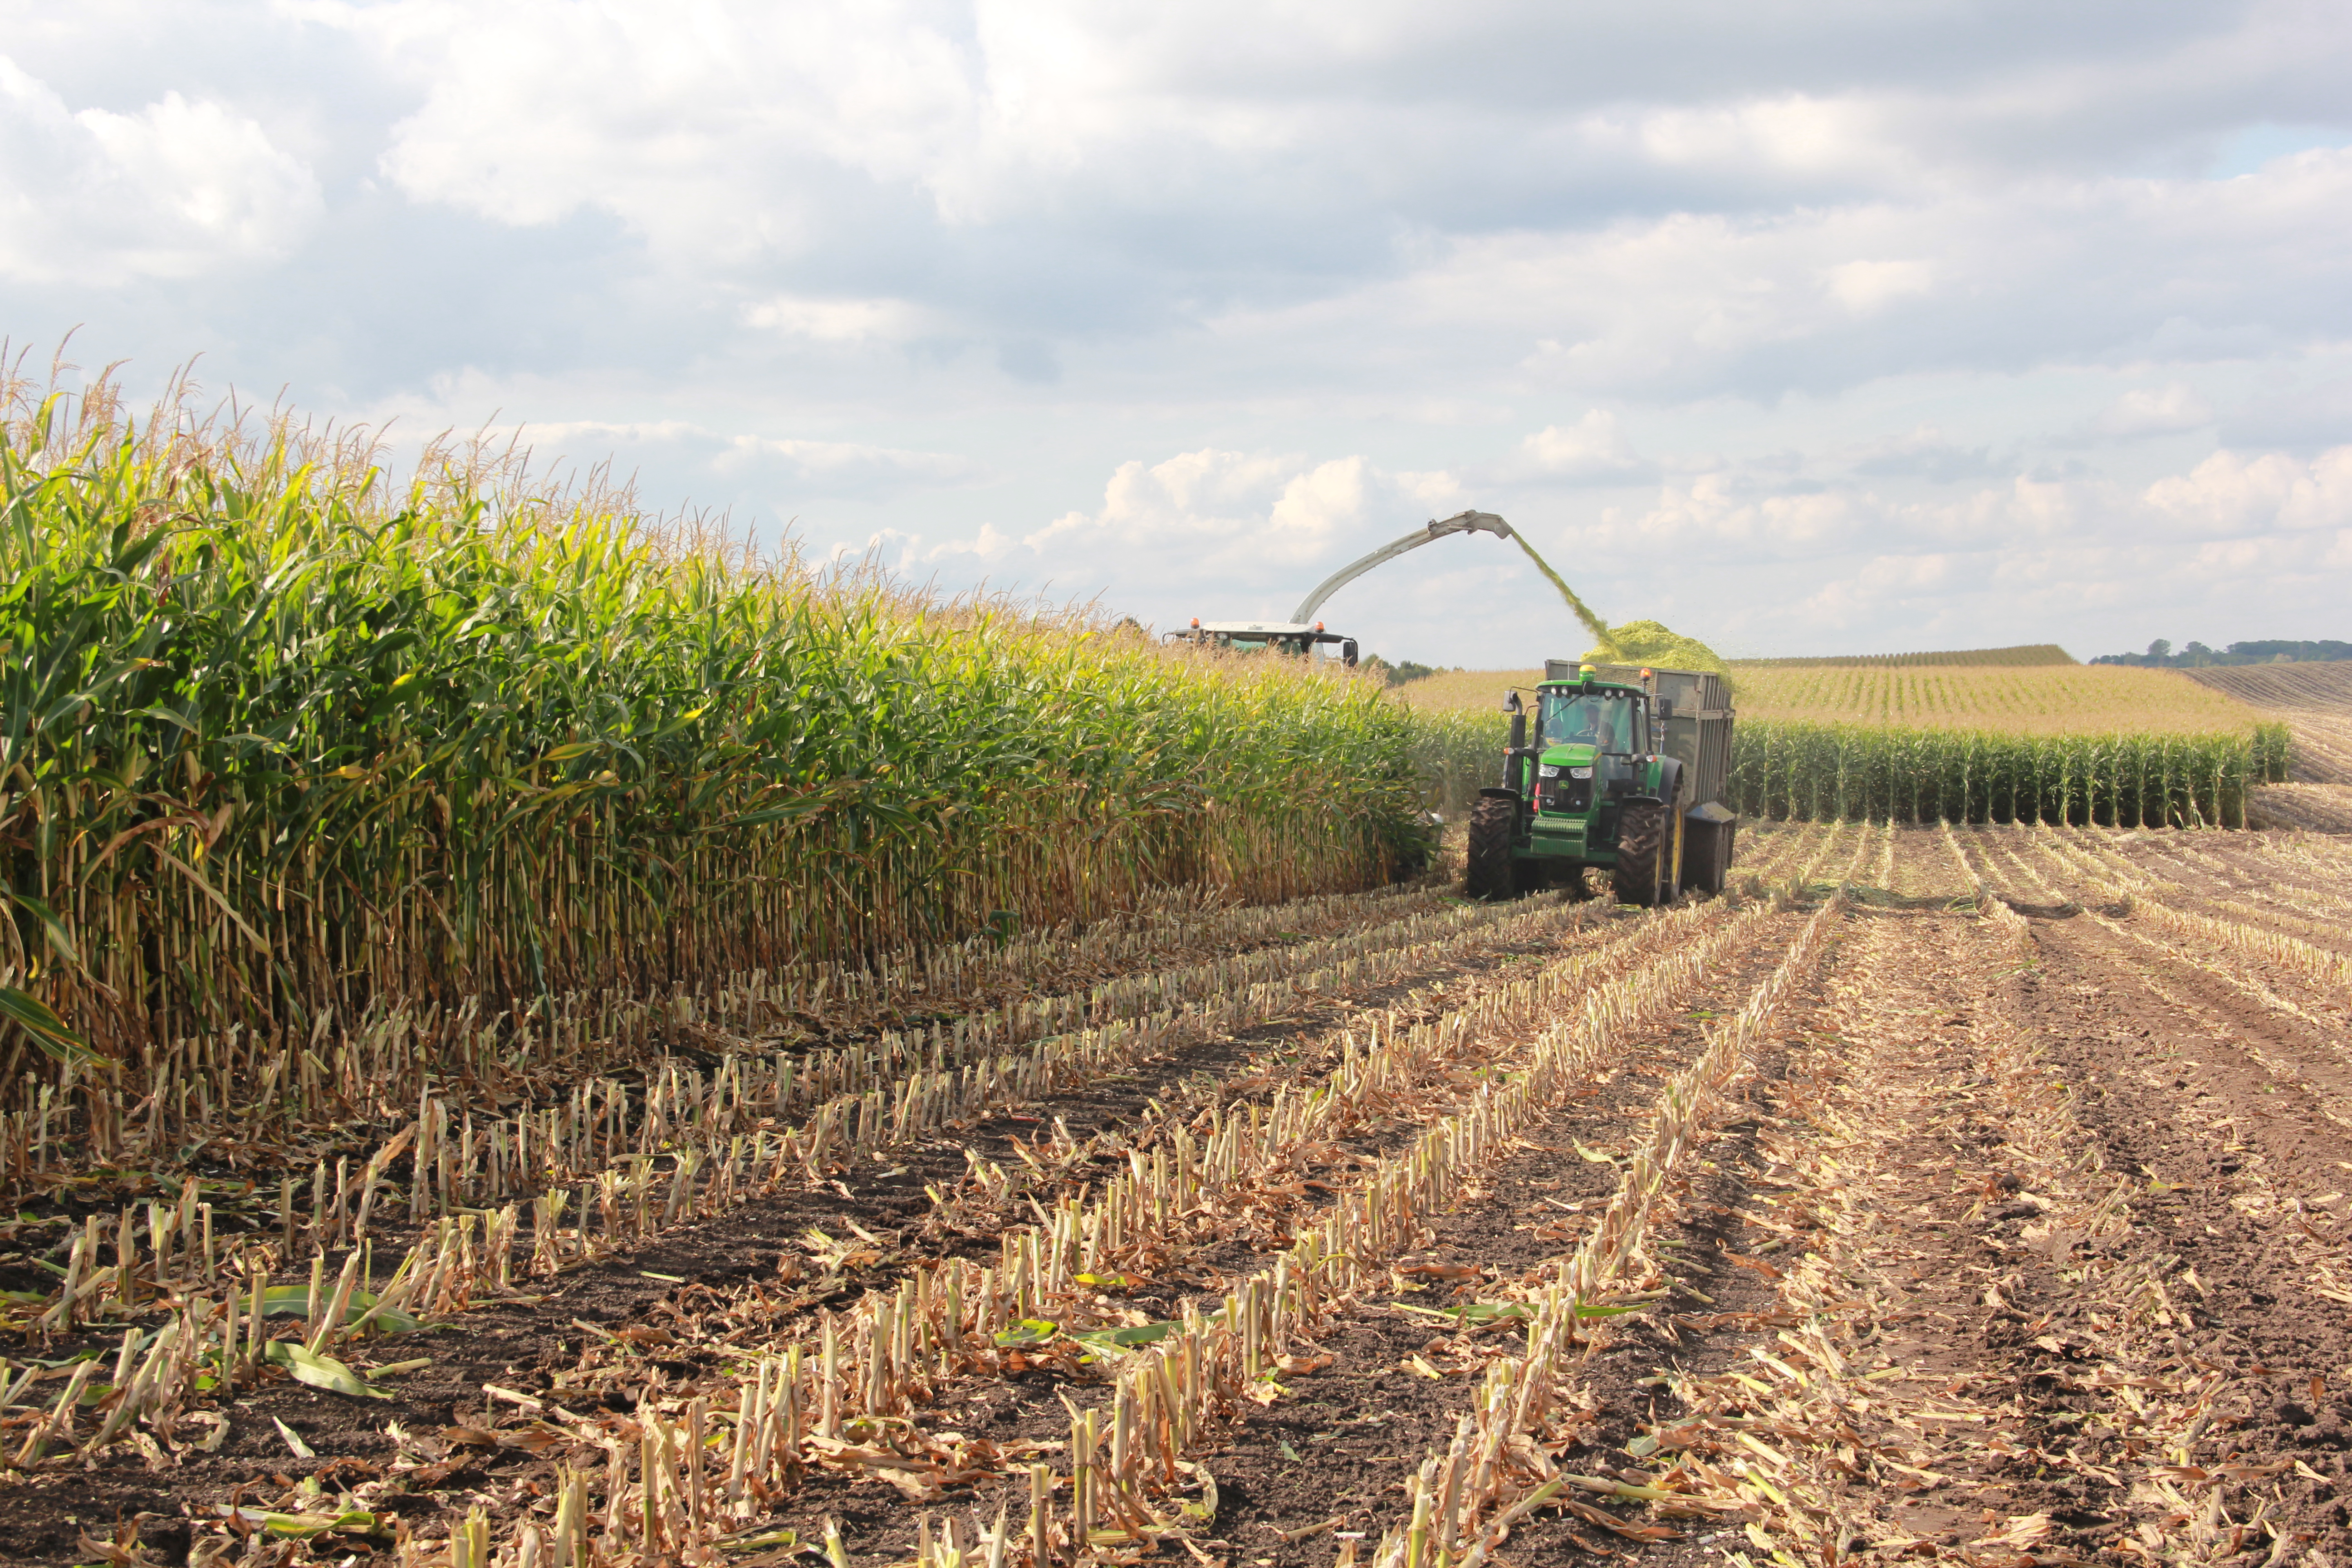 Процес збирання урожаю кукурудзи на силос